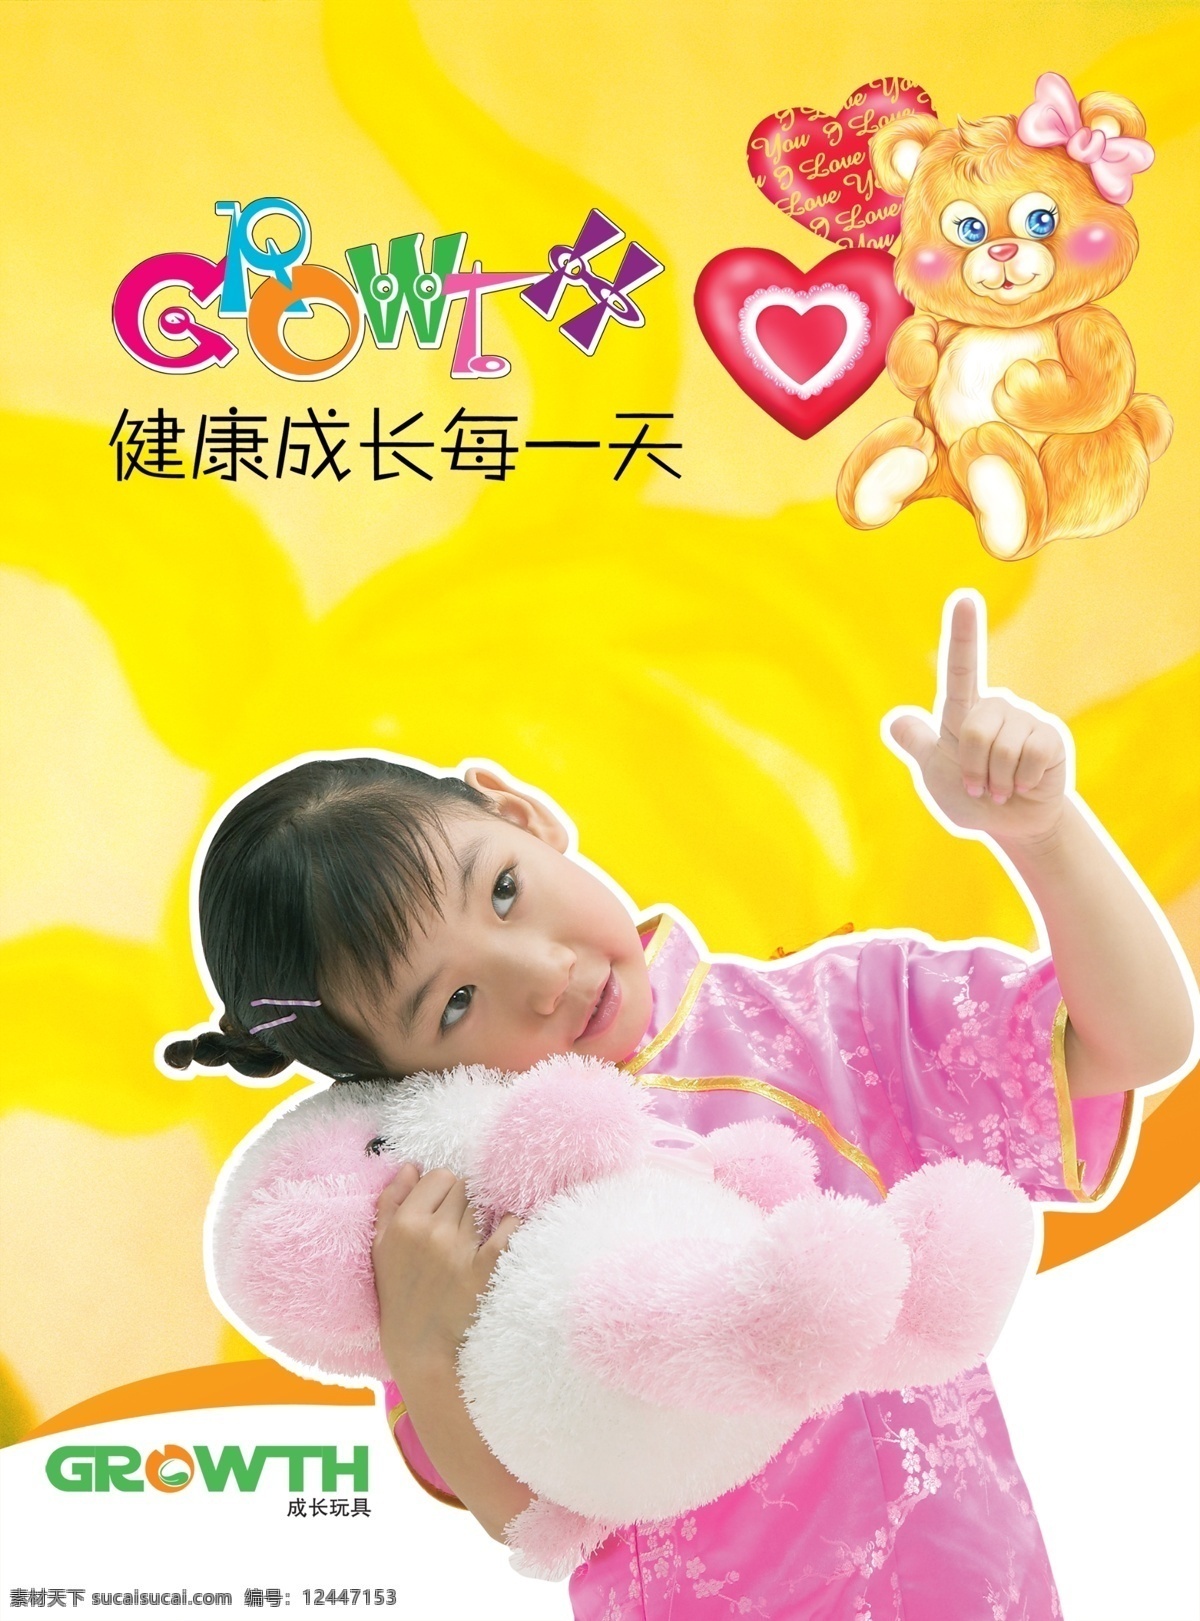 布娃娃 儿童 广告设计模板 玩具 小女孩 小熊 宣传画 成长 海报 模板下载 成长玩具海报 源文件库 psd源文件